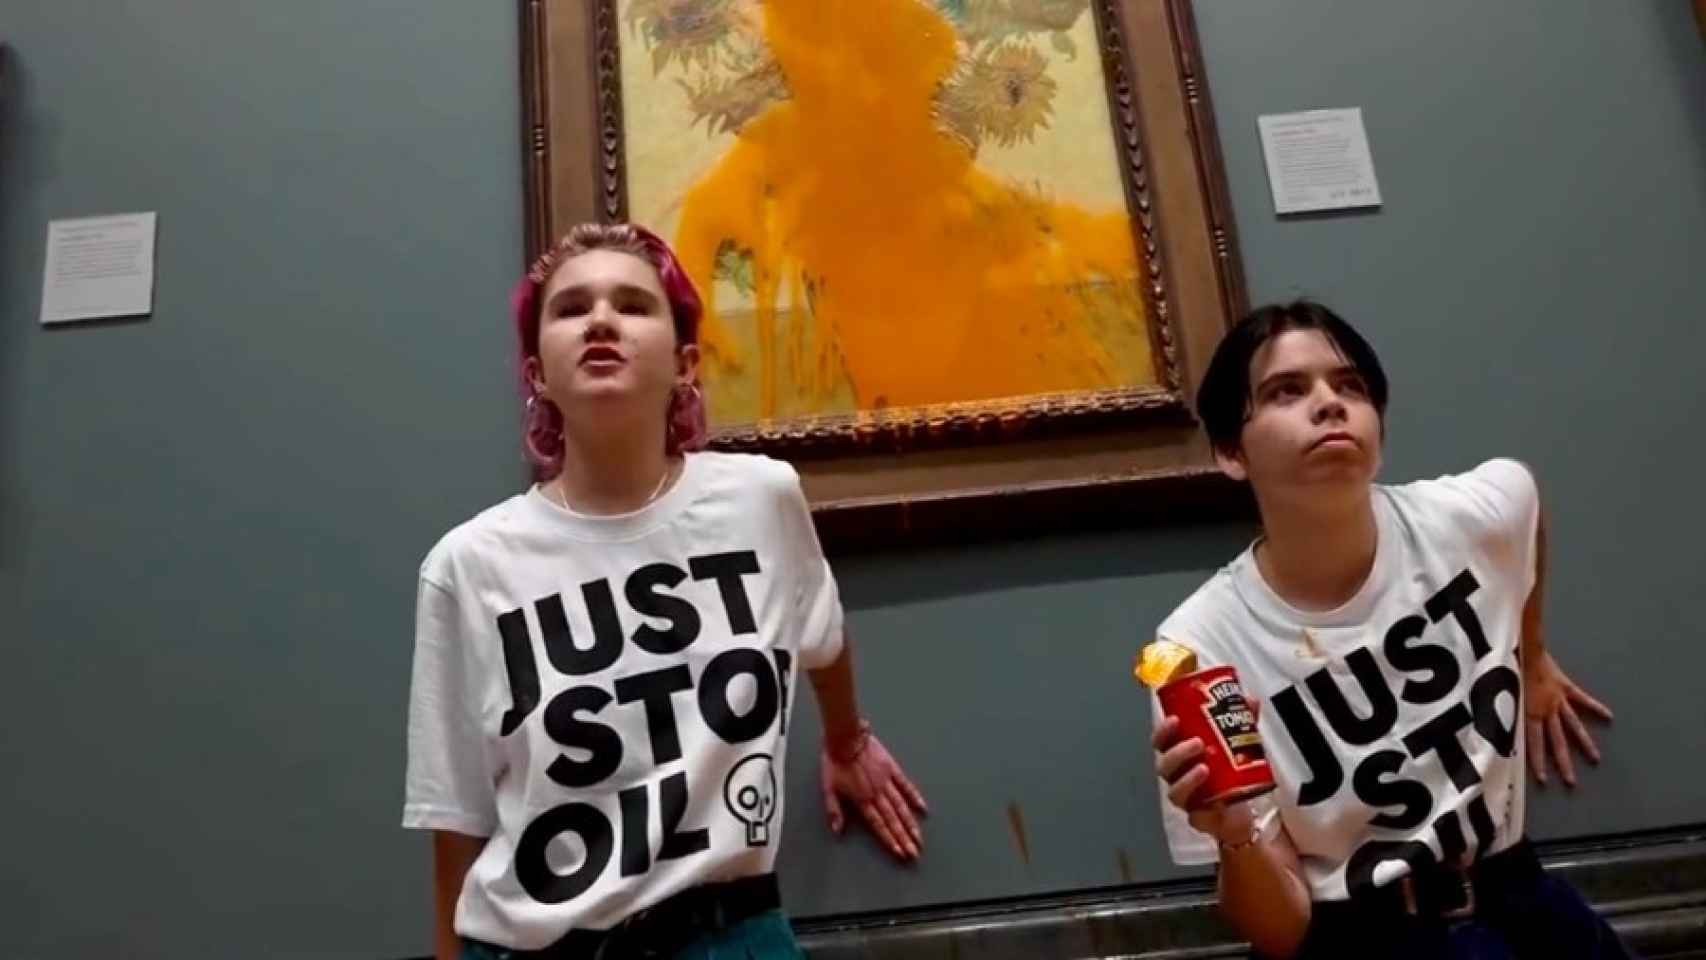 Las activistas de Just Stop Oil en el ataque con sopa de tomate a Los girasoles de Van Gogh. El cuadro estaba protegido y numerosos fotógrafos esperaban la actuación.